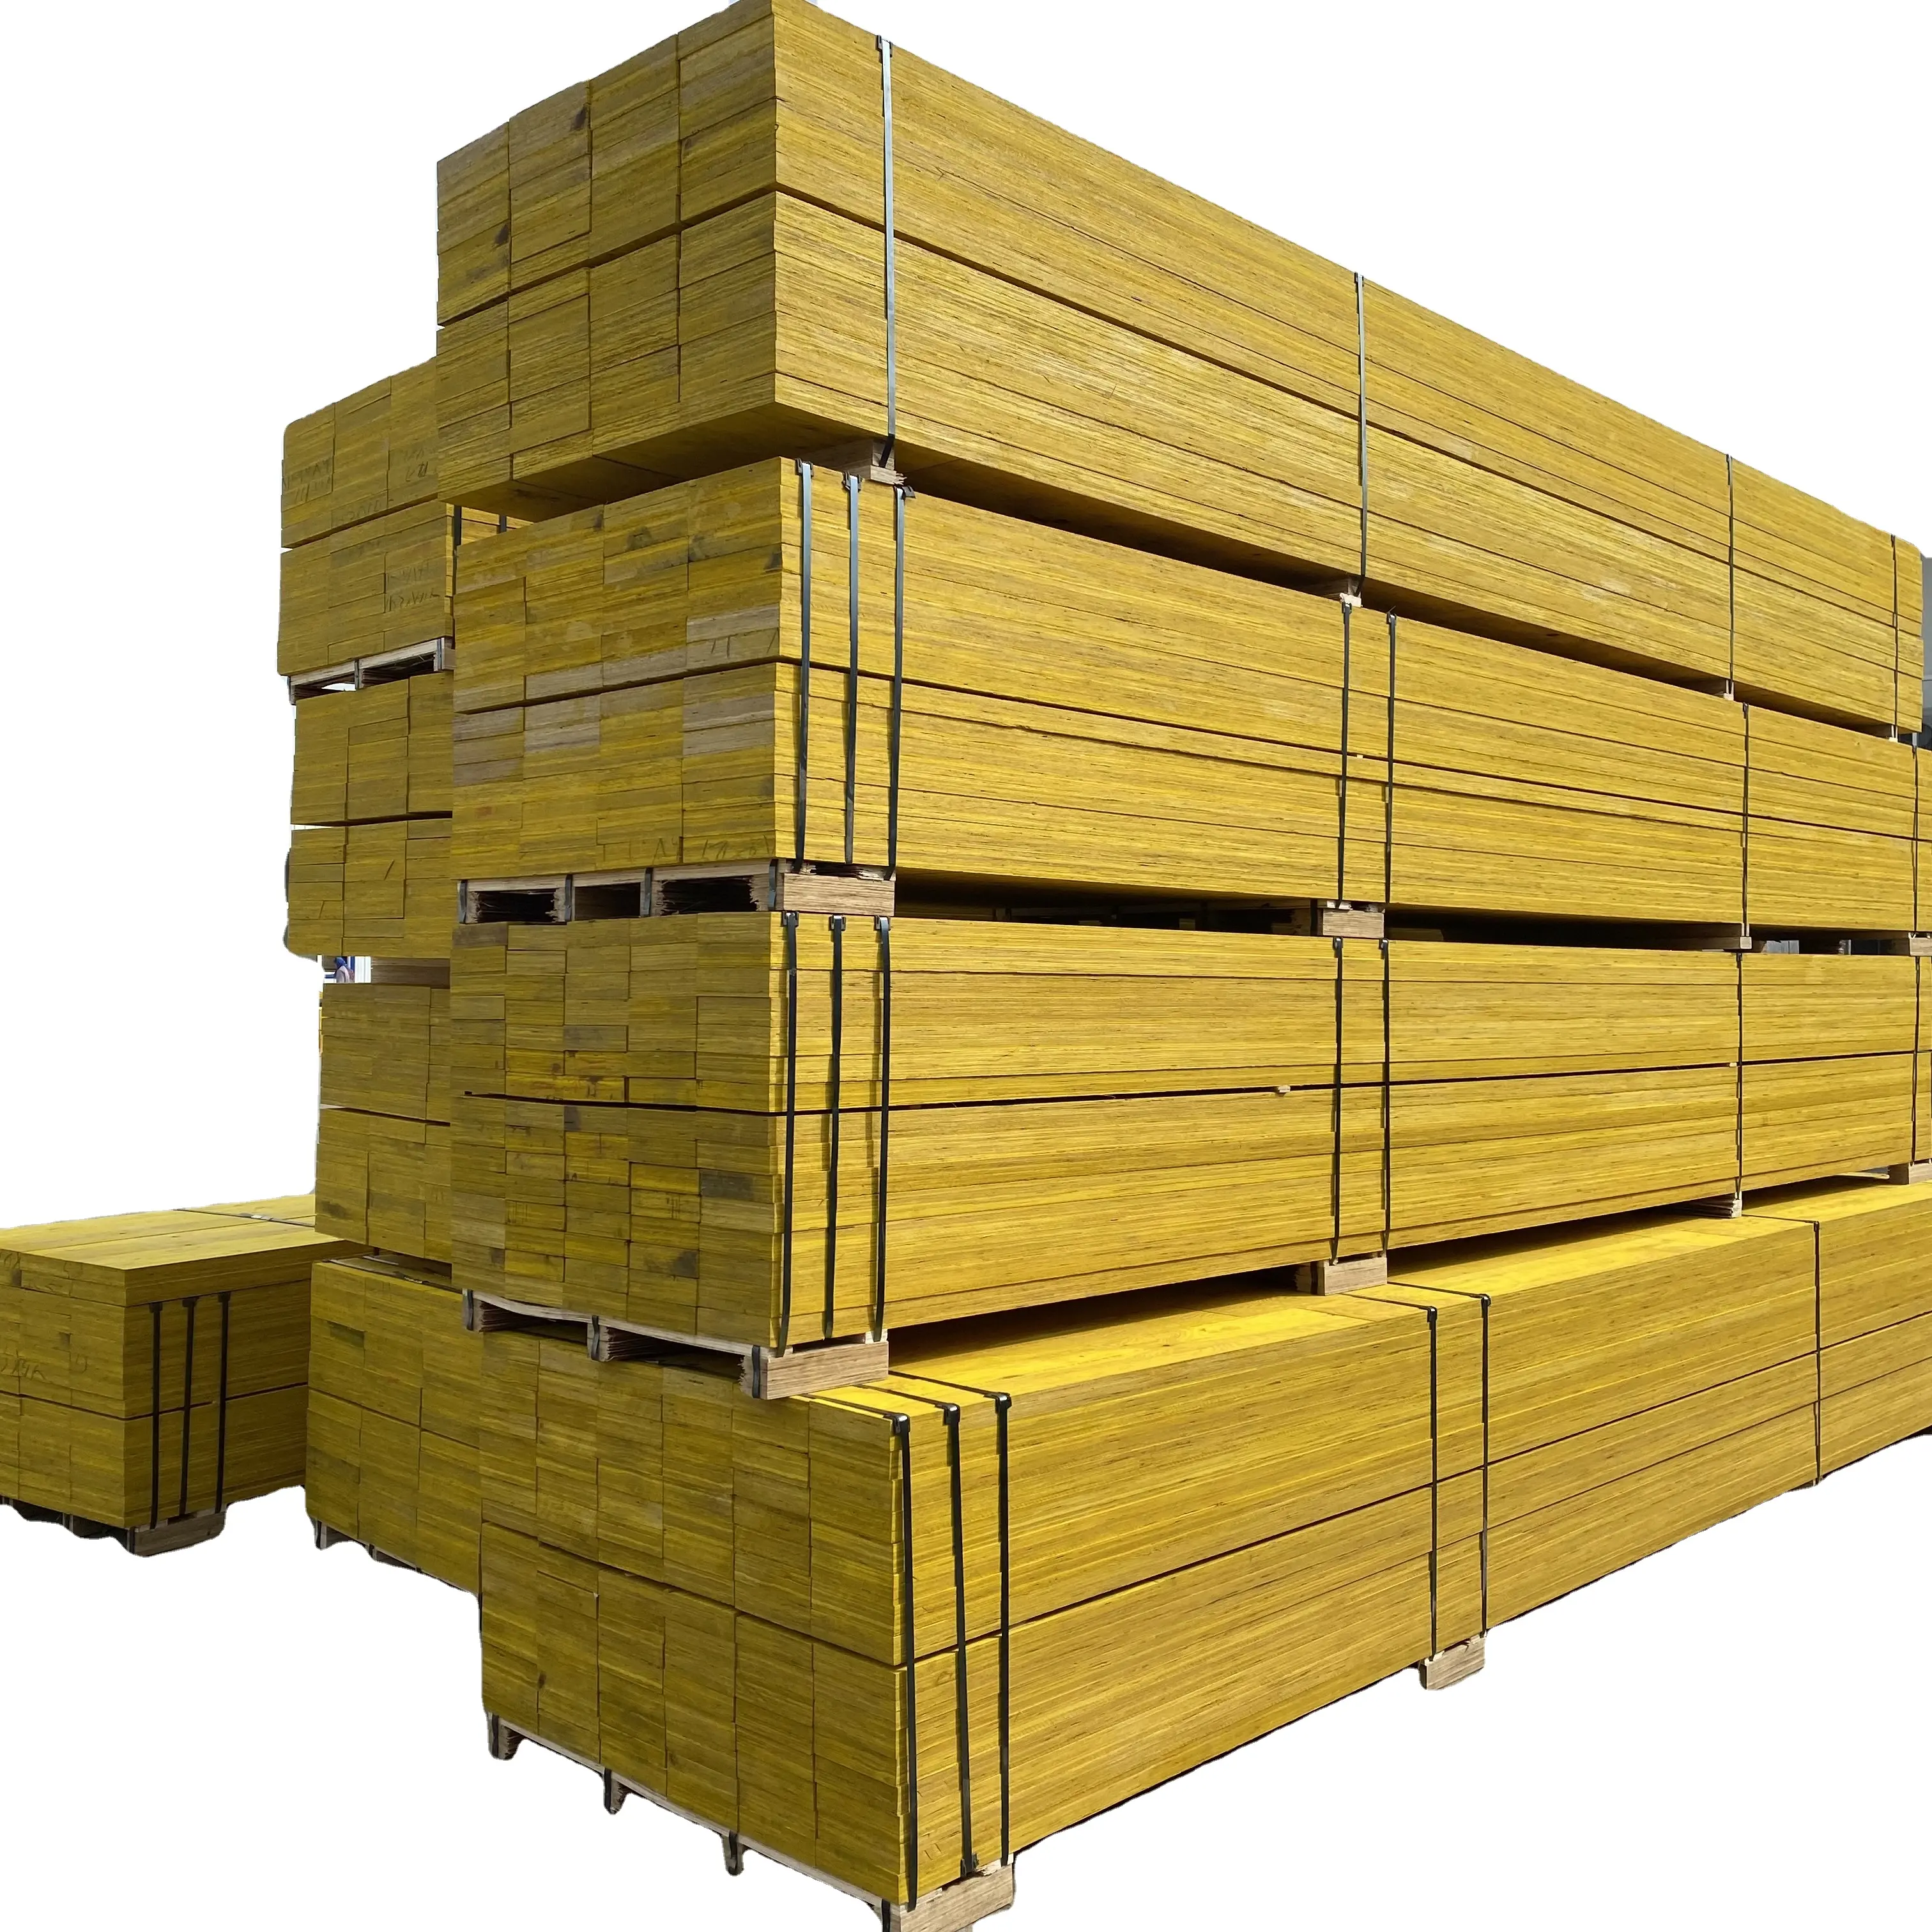 نوعية جيدة الصنوبر الخشب الخشب الصنوبر LVL H20 الأخشاب شعاع خشب مصقول الحزم/lvl سقالة ألواح للبناء